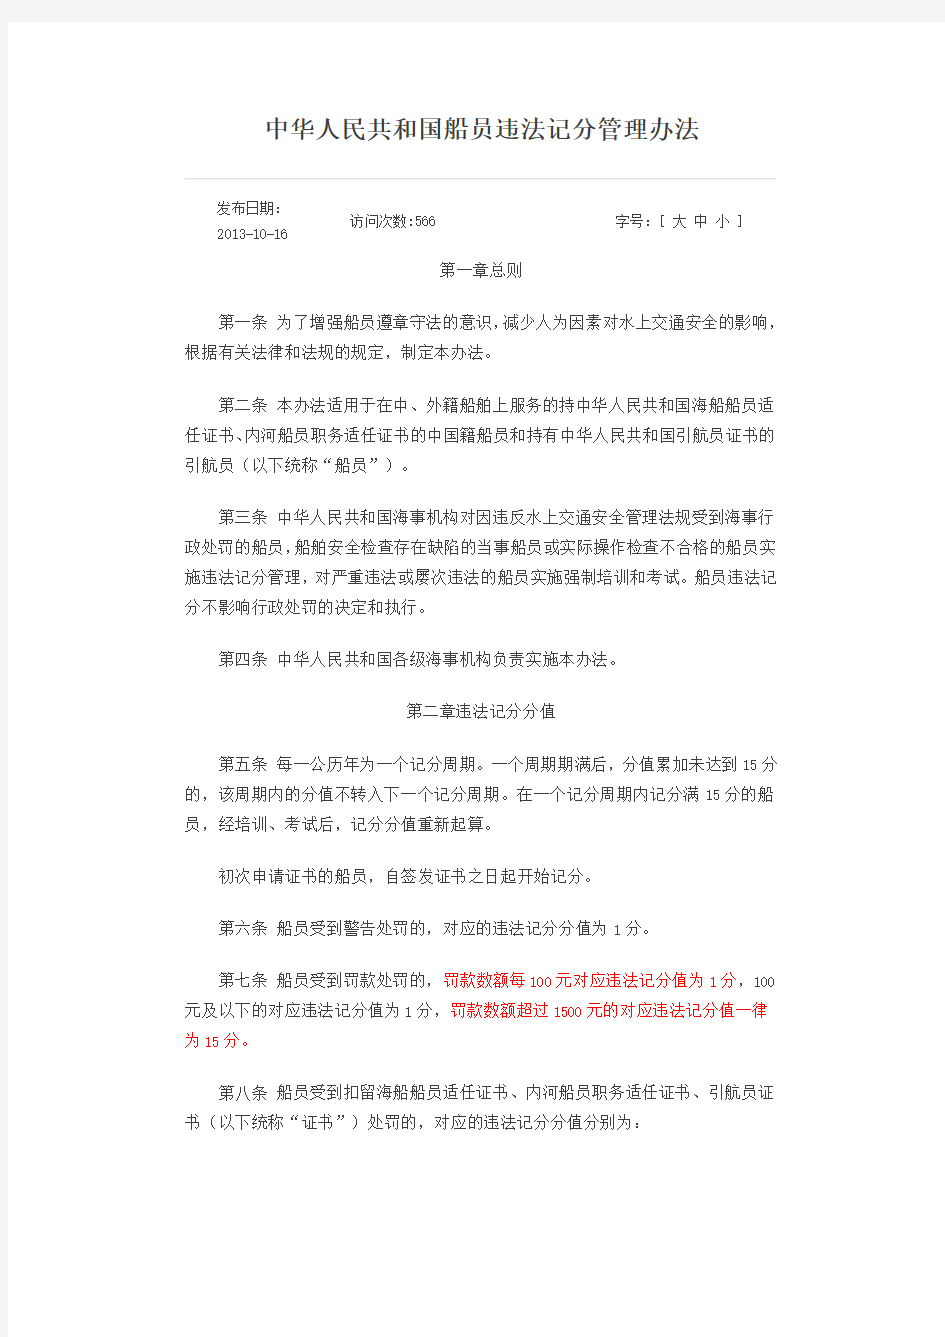 中华人民共和国船员违法记分管理办法